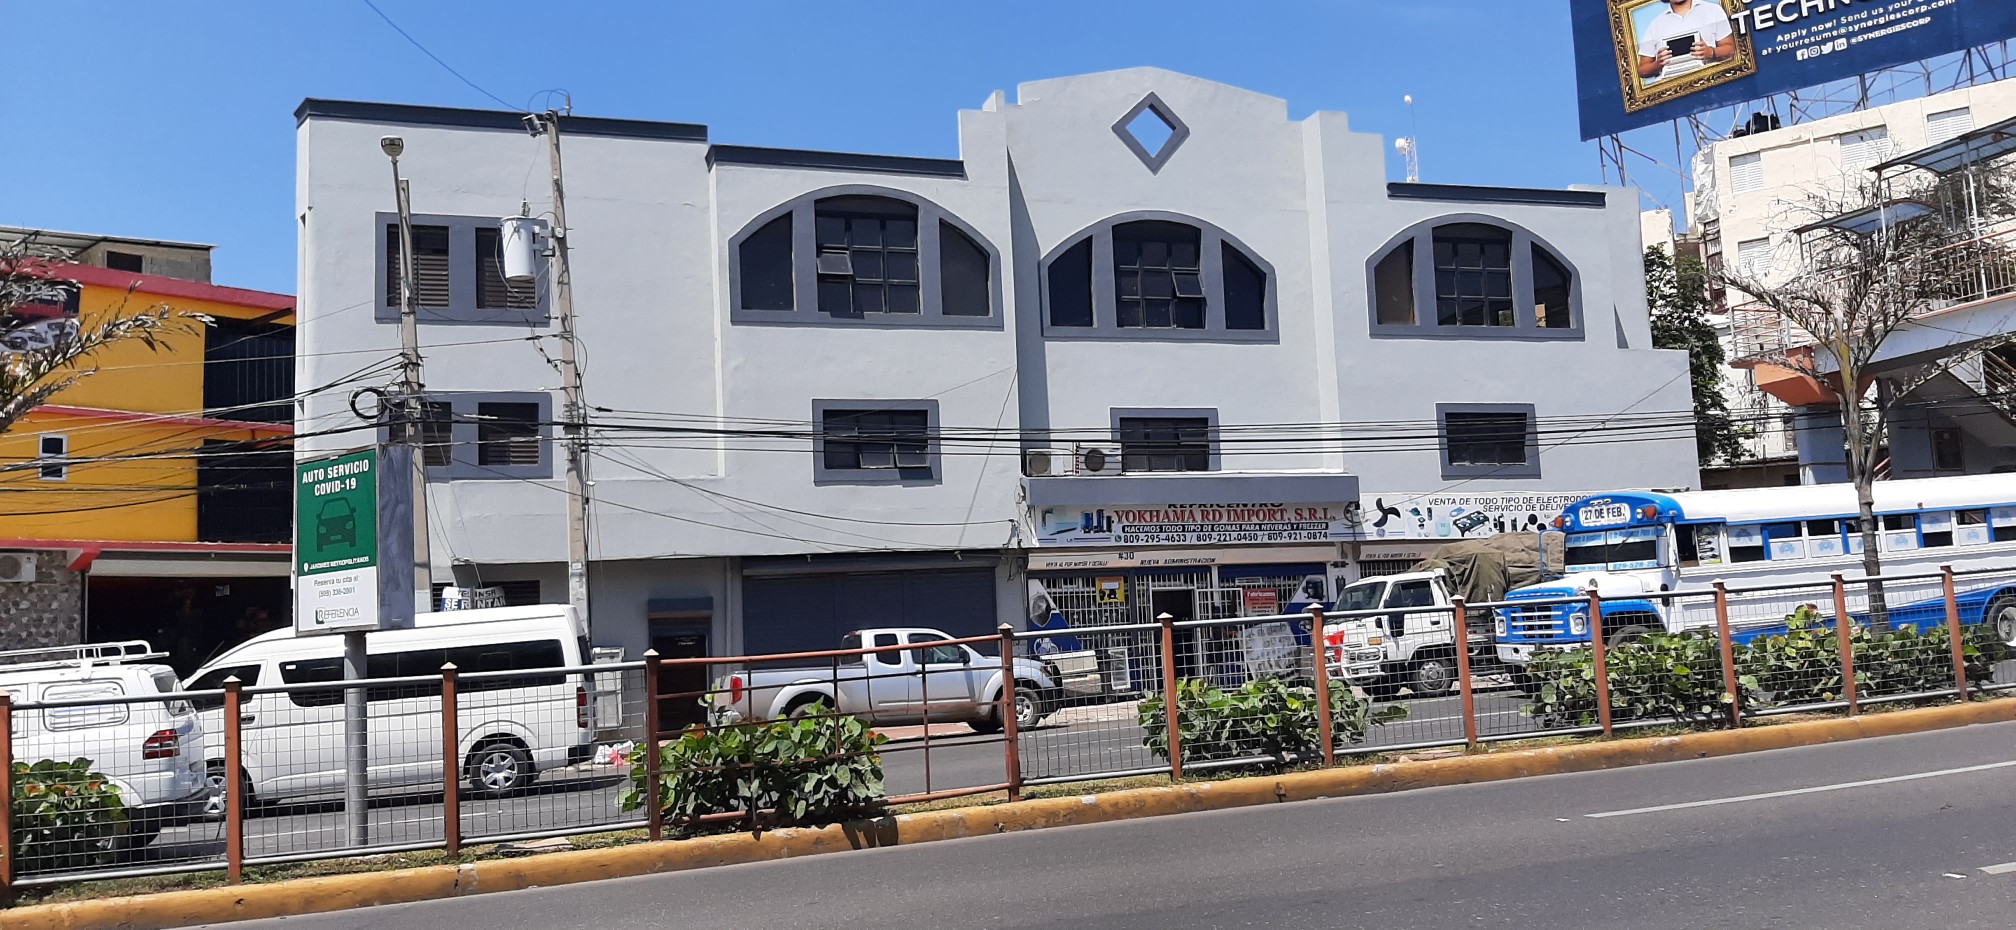 oficinas y locales comerciales - Se renta  locales  en este edificio  en la 27 de febrero  santiago. 